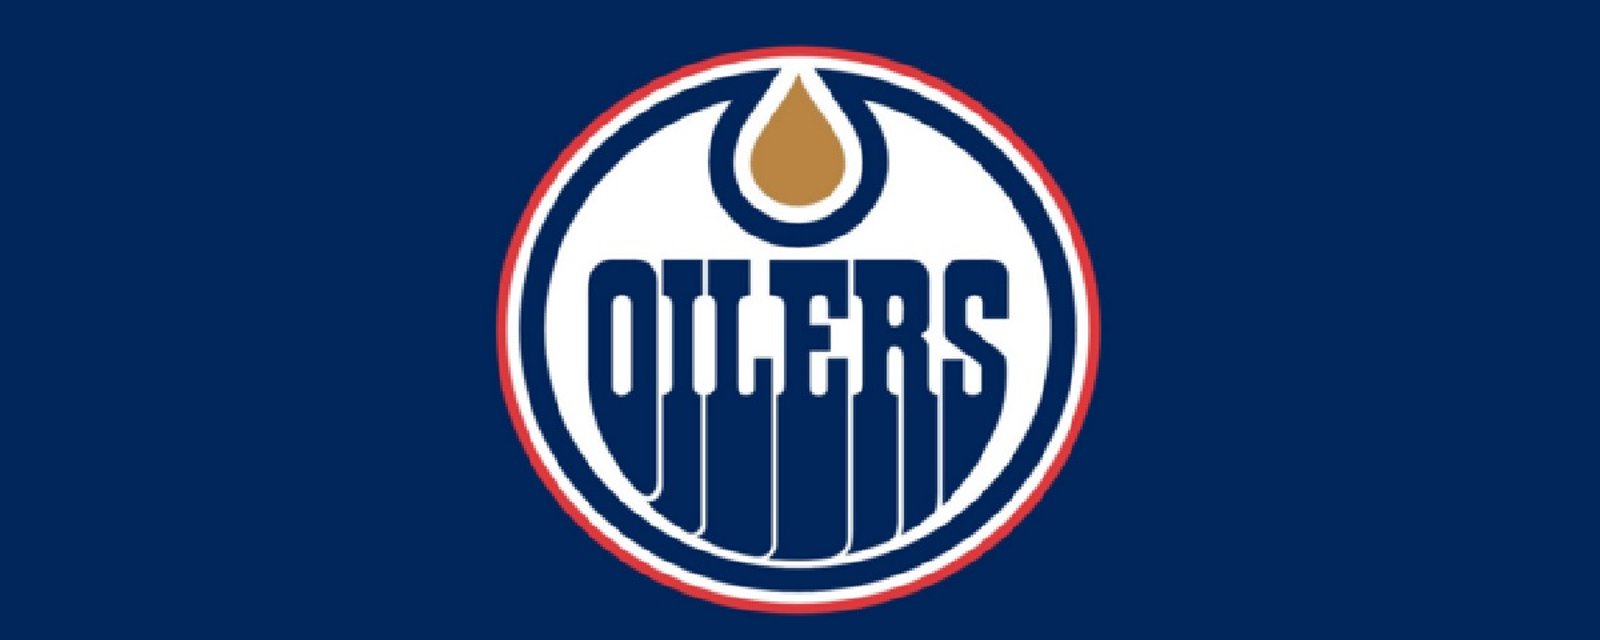 Les Oilers seraient sur le point de compléter une importante transaction!